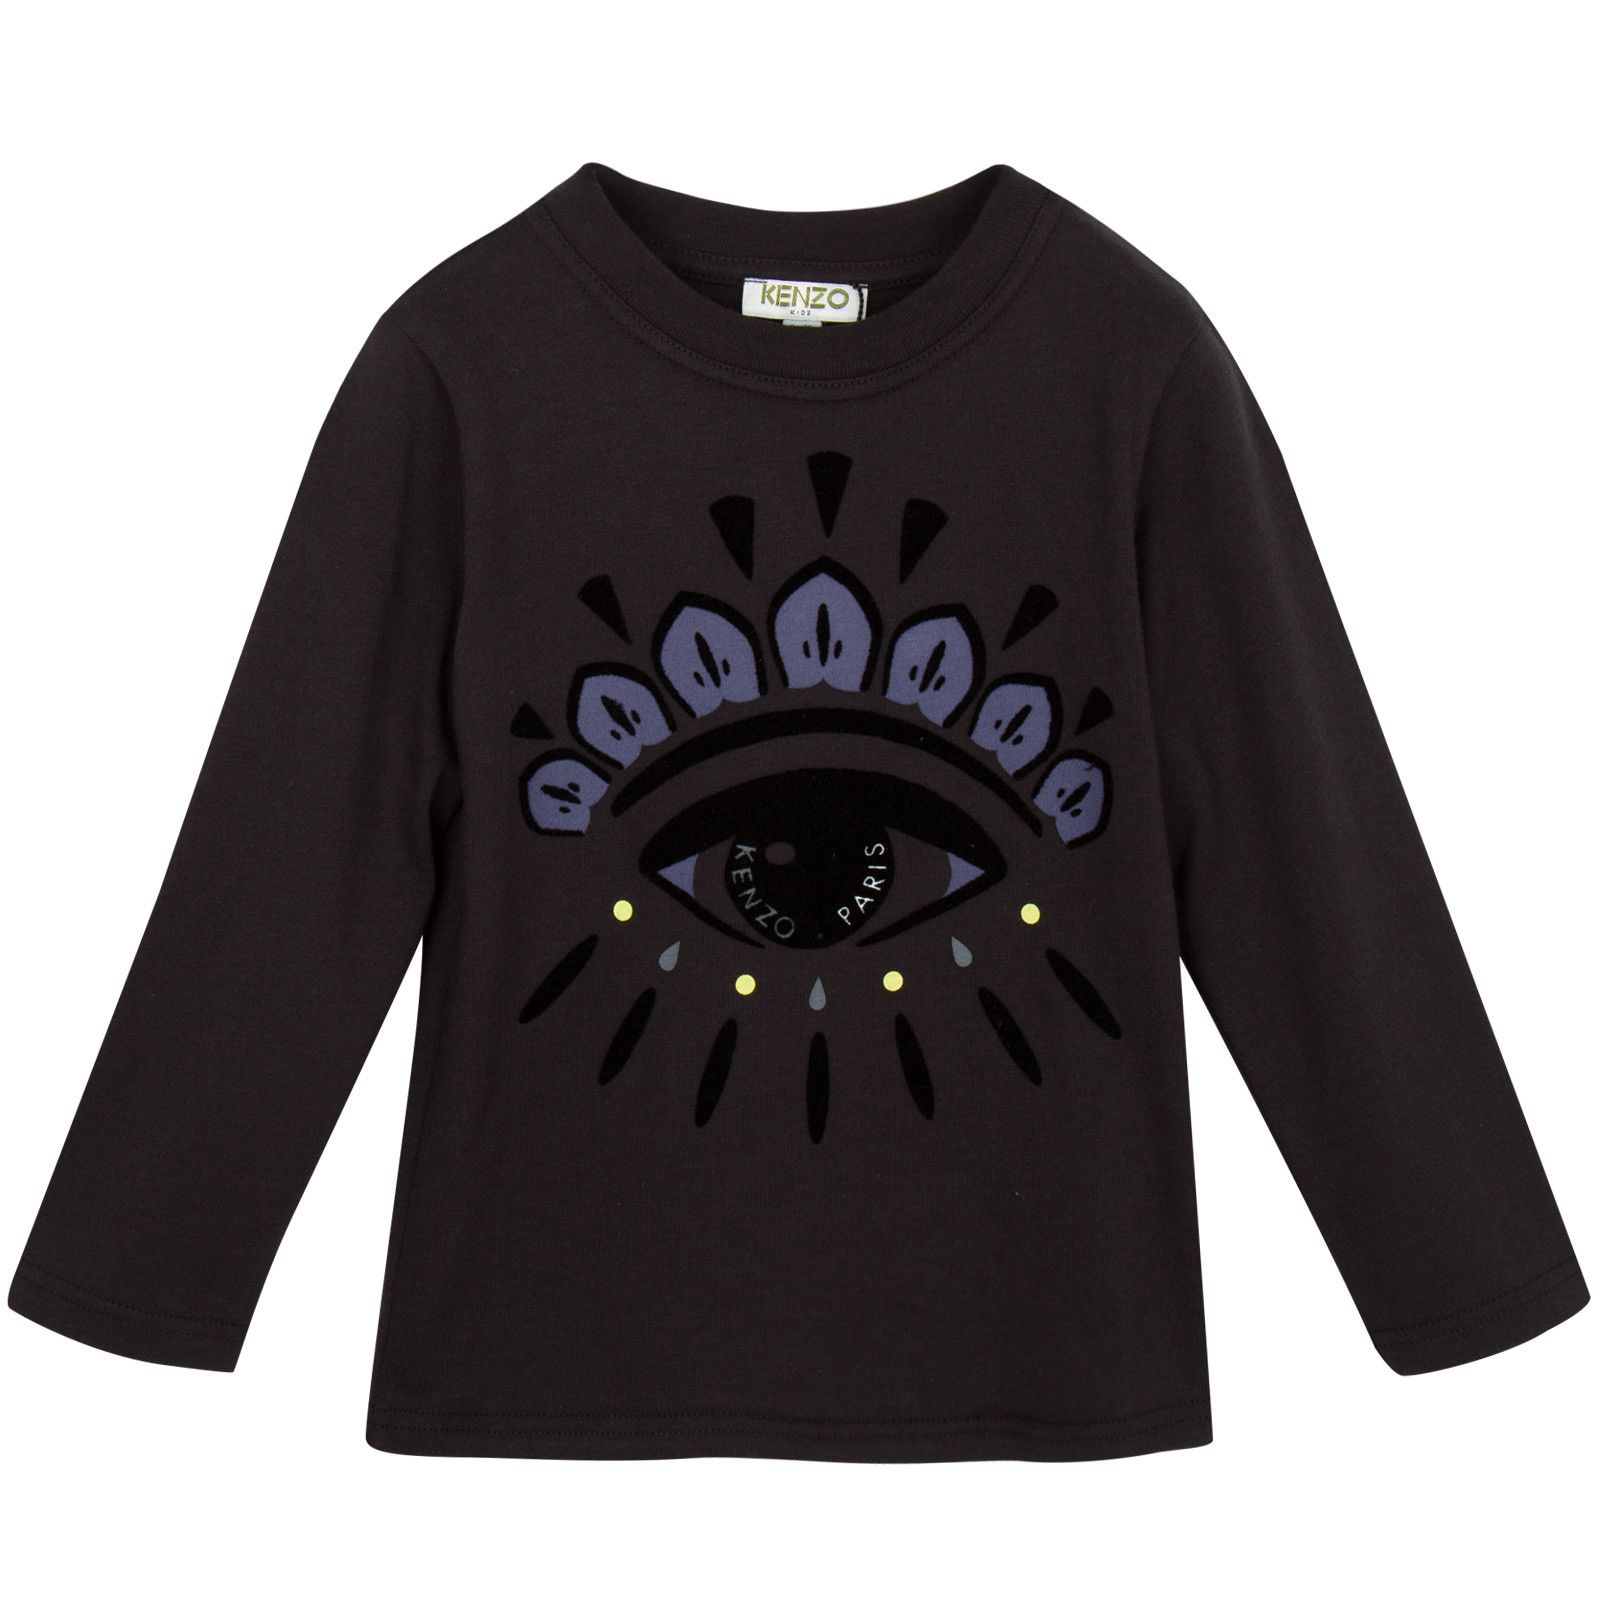 Girls Dark Grey Cotton Jersey Eye Embroidered T-Shirt - CÉMAROSE | Children's Fashion Store - 1